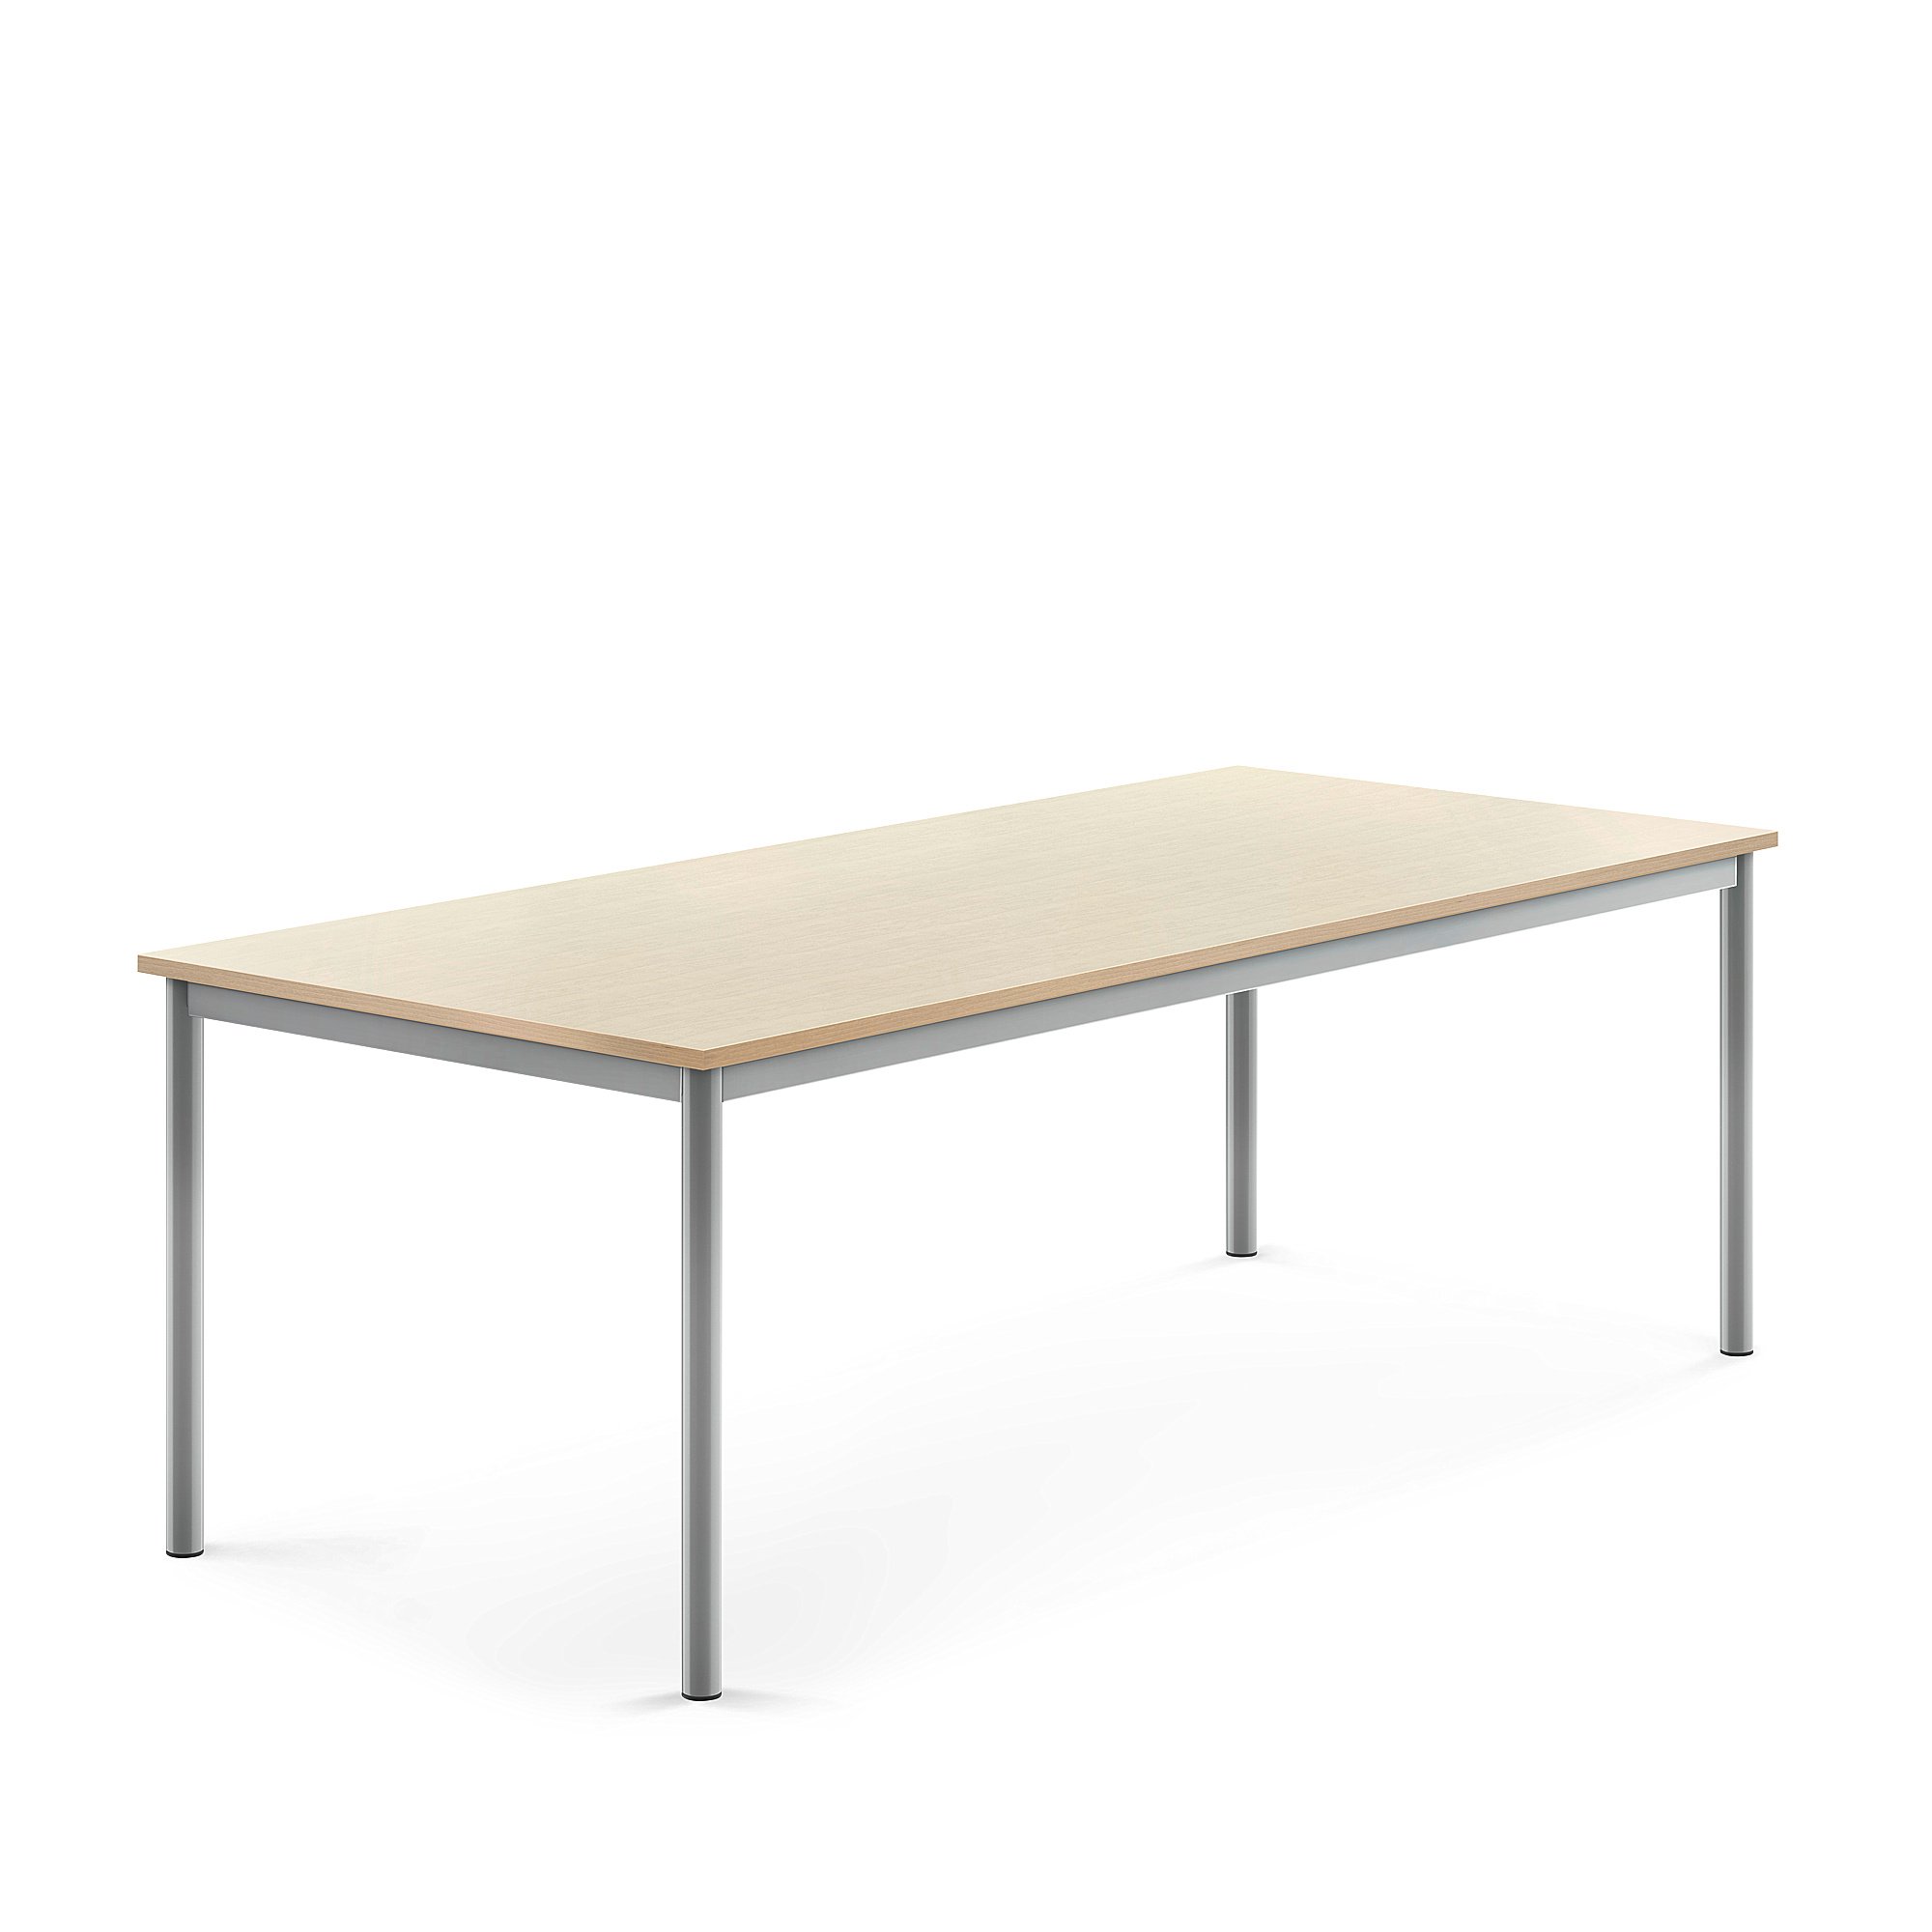 Stůl BORÅS, 1800x800x600 mm, stříbrné nohy, HPL deska, bříza